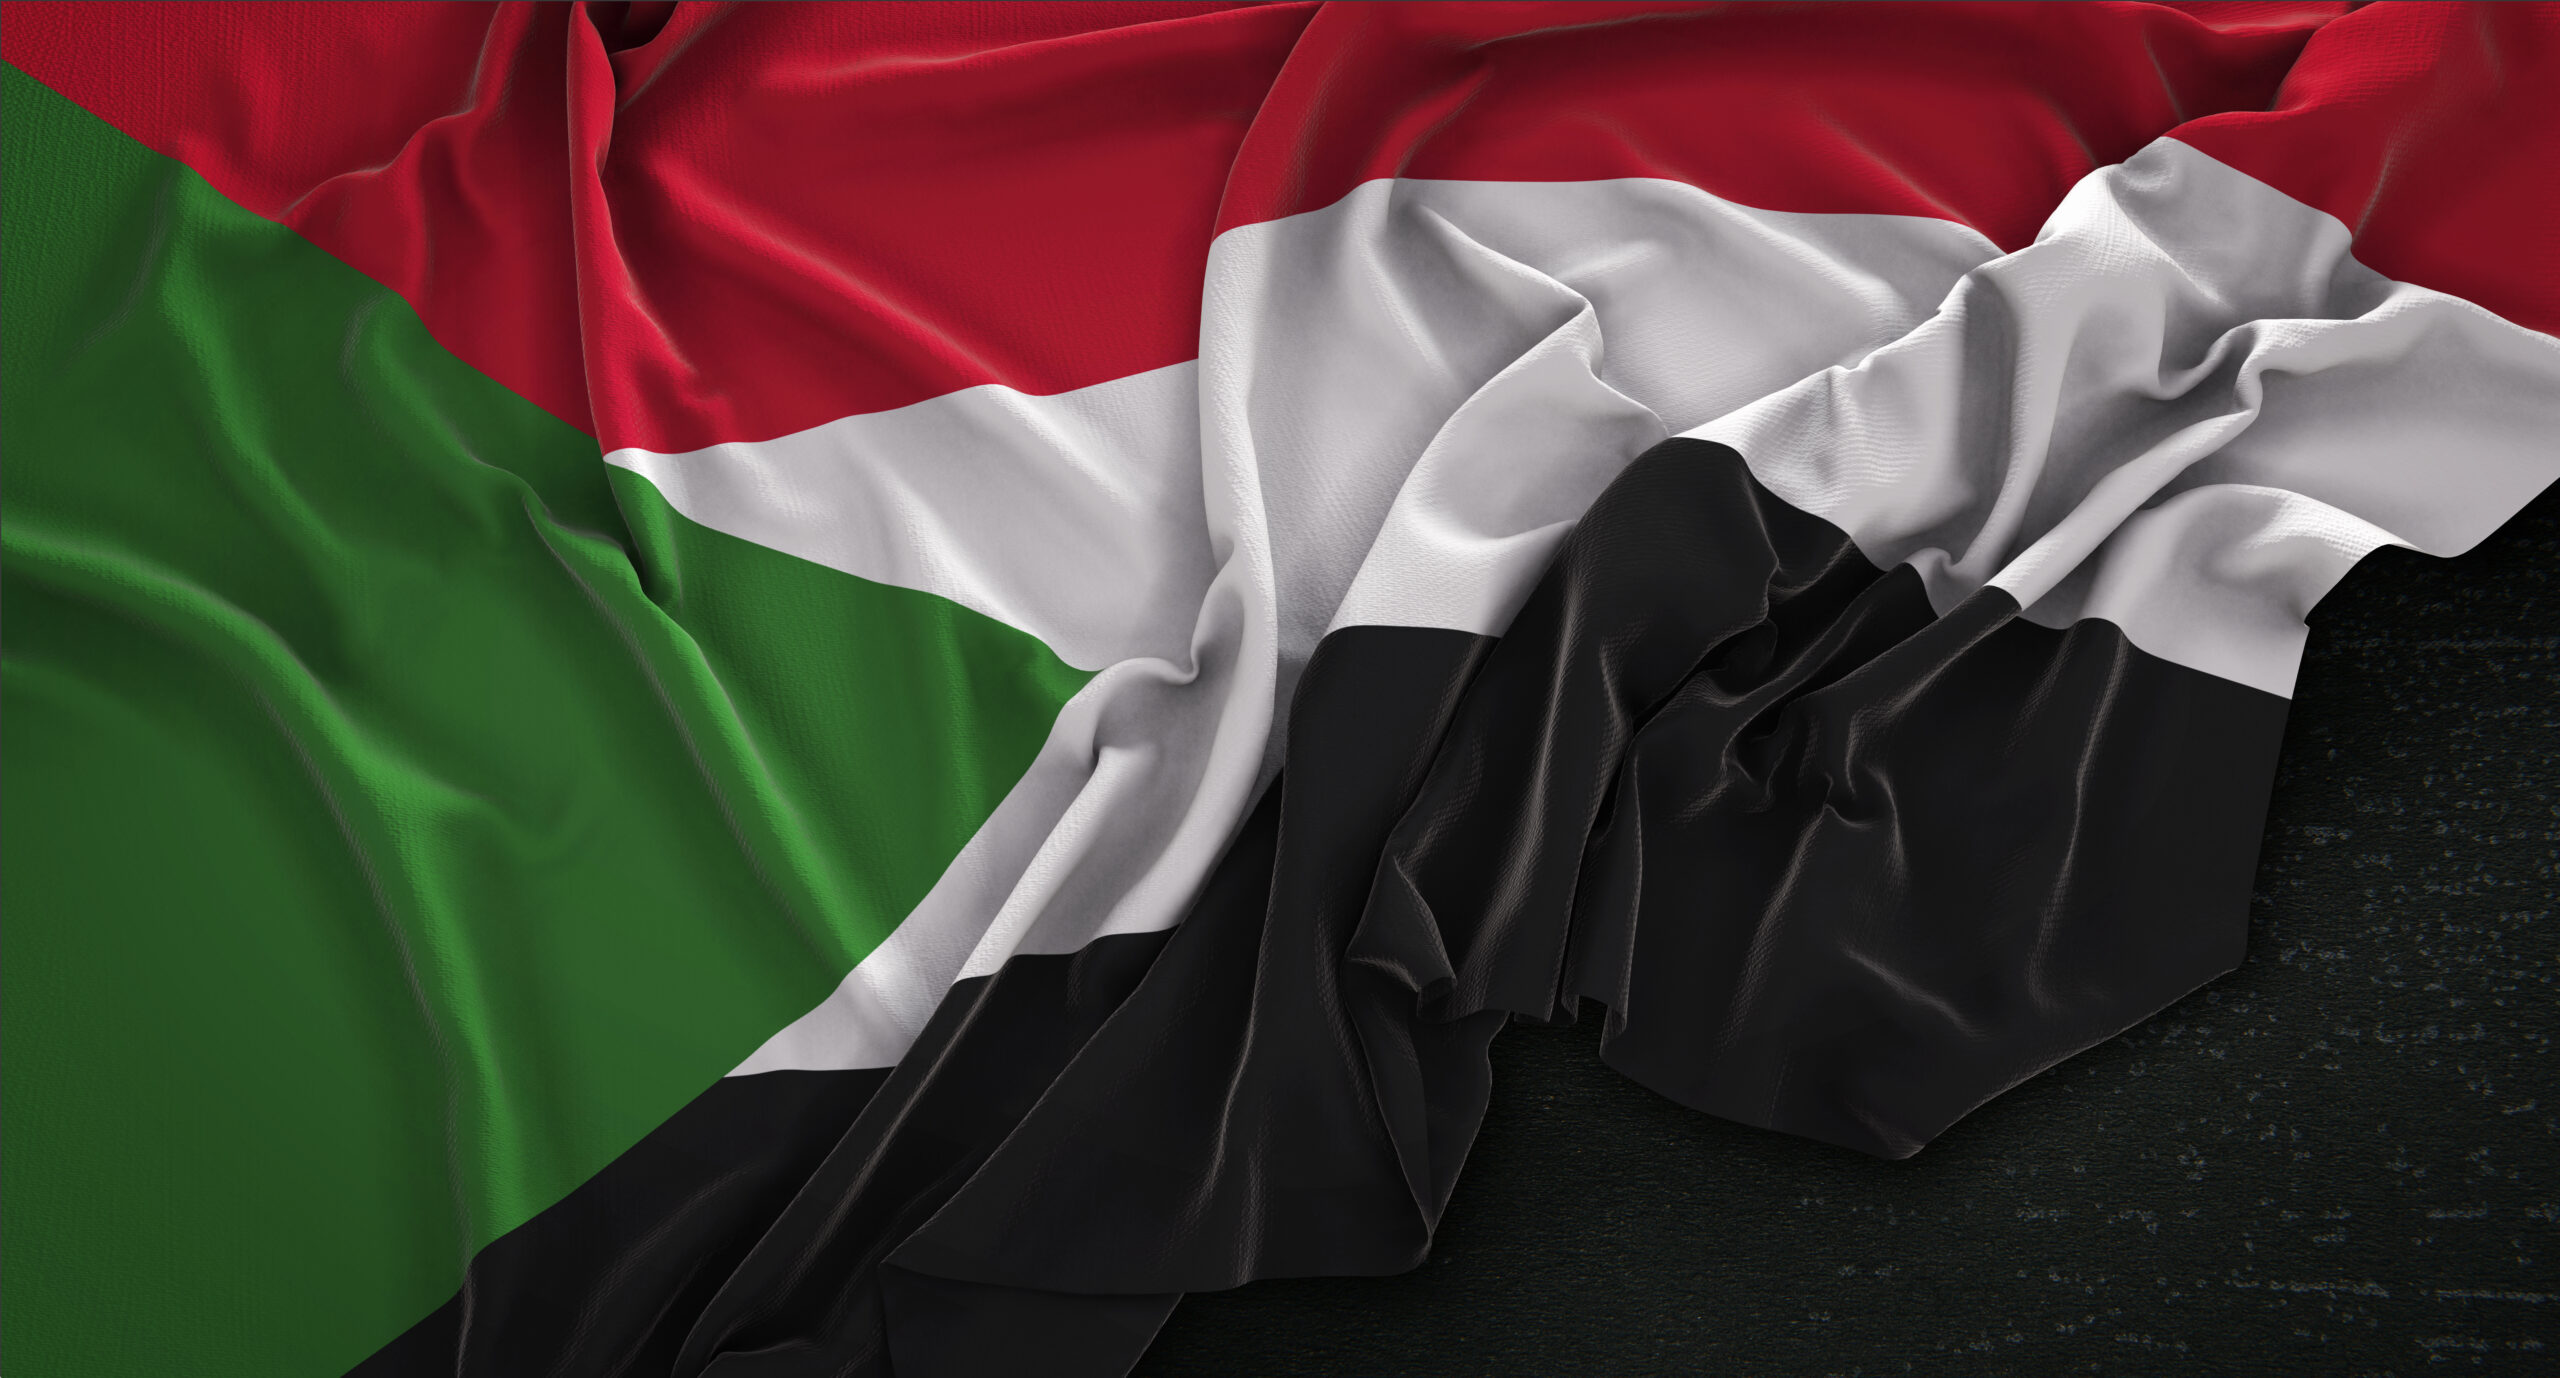 Guerra in Sudan: gli stati africani offrono una mediazione